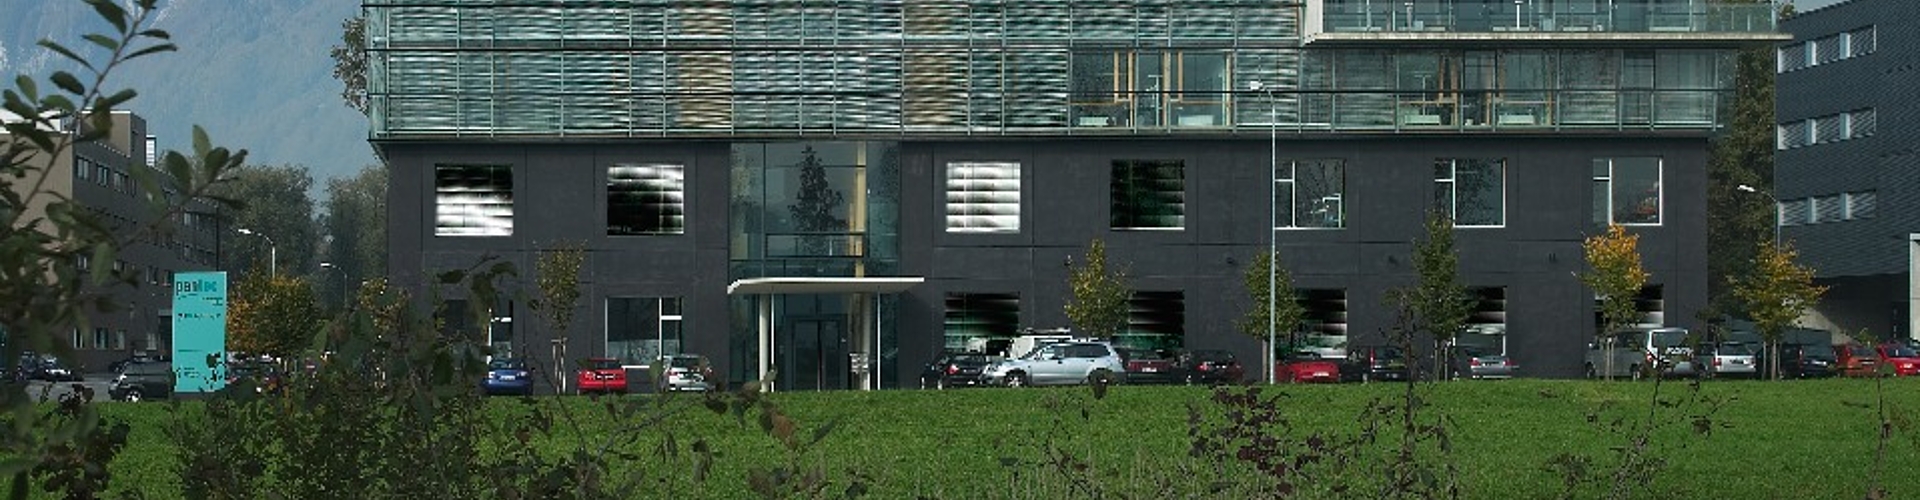 Wiese und Gebäude mit Glasfassade und Spezial-Lichtlenk-Jalousien.